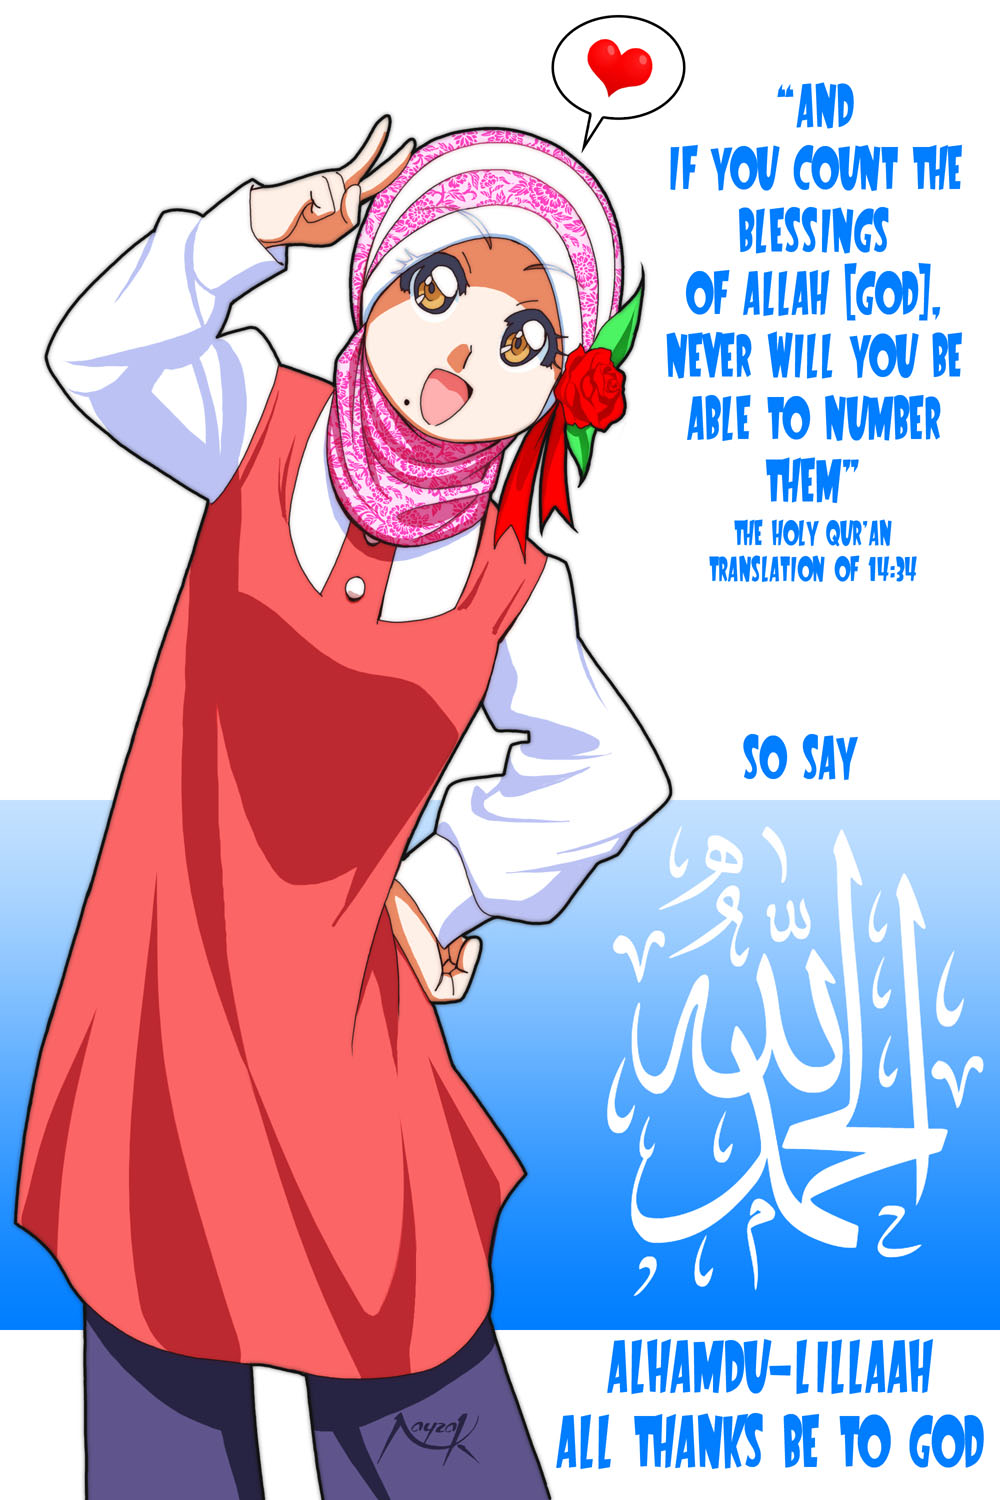 Catatan Kecil Kartun Muslimah Comel Dan Cantik Kabar Bola